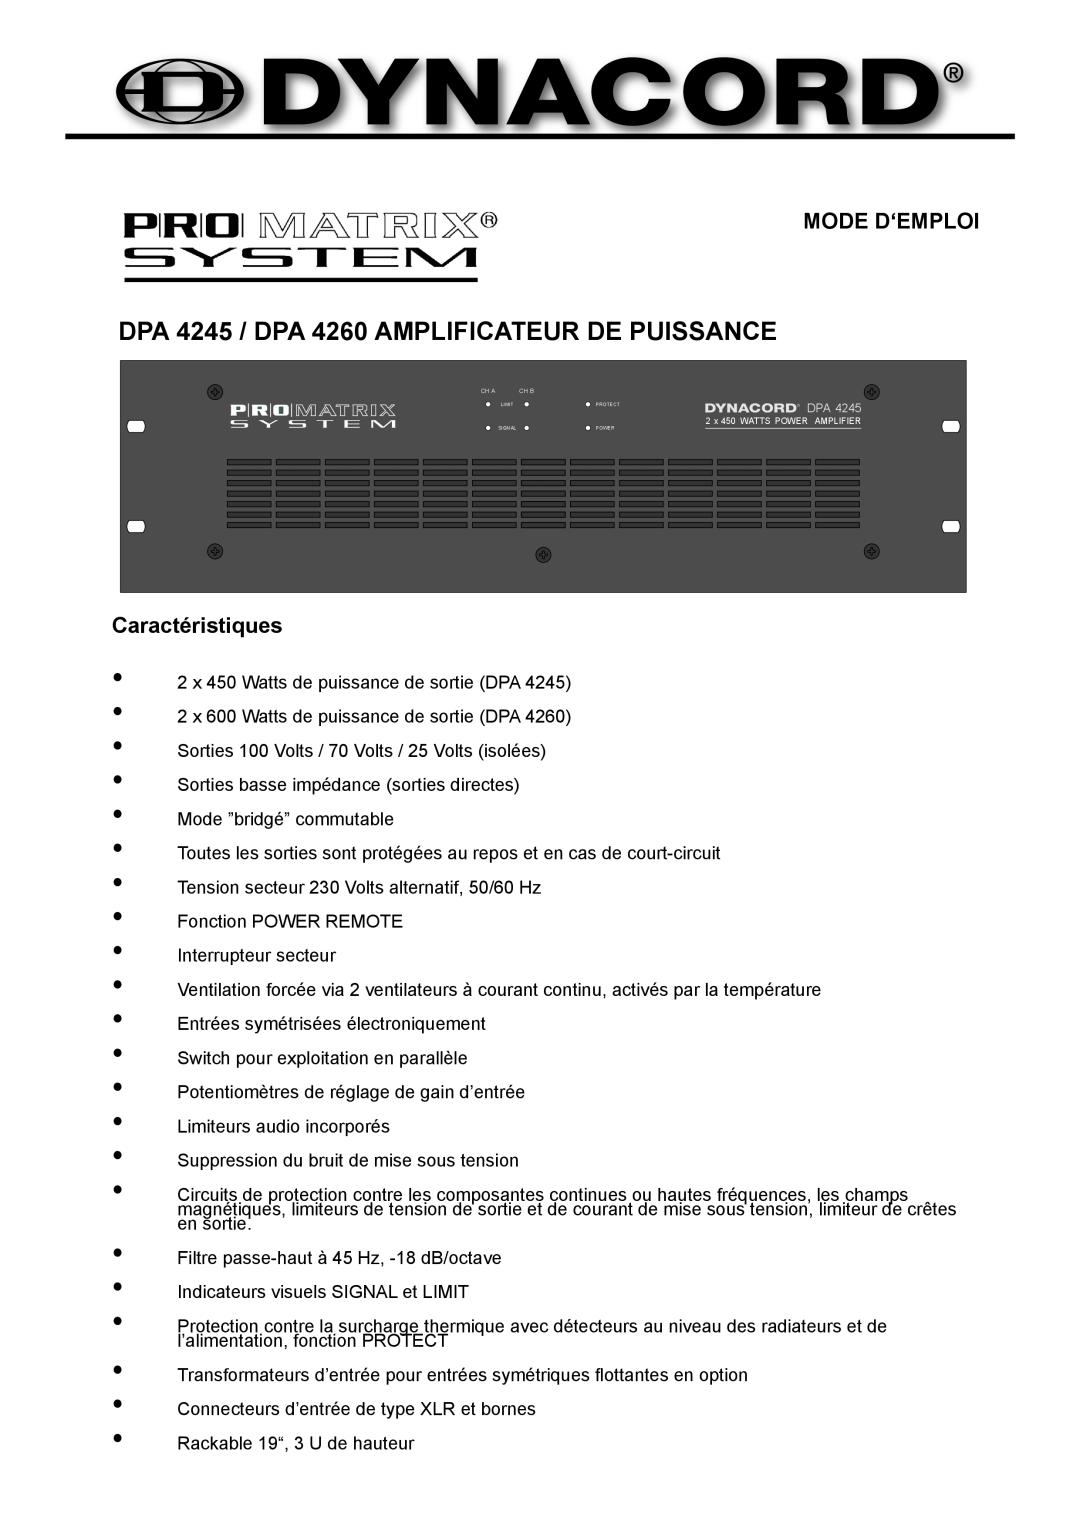 Dynacord owner manual DPA 4245 / DPA 4260 AMPLIFICATEUR DE PUISSANCE, Mode D‘Emploi, Caractéristiques 